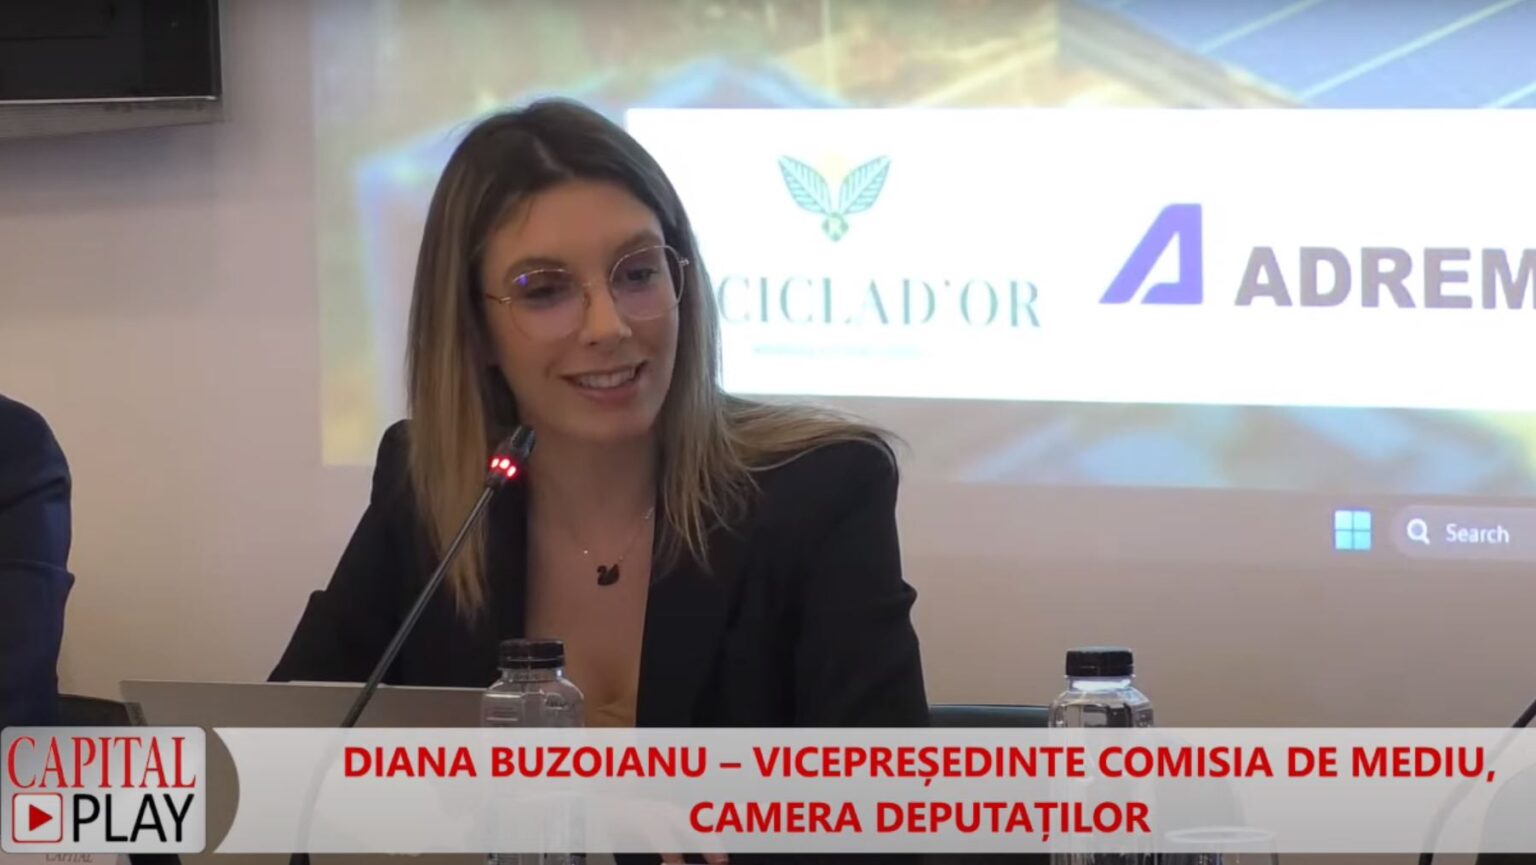 Diana Buzoianu